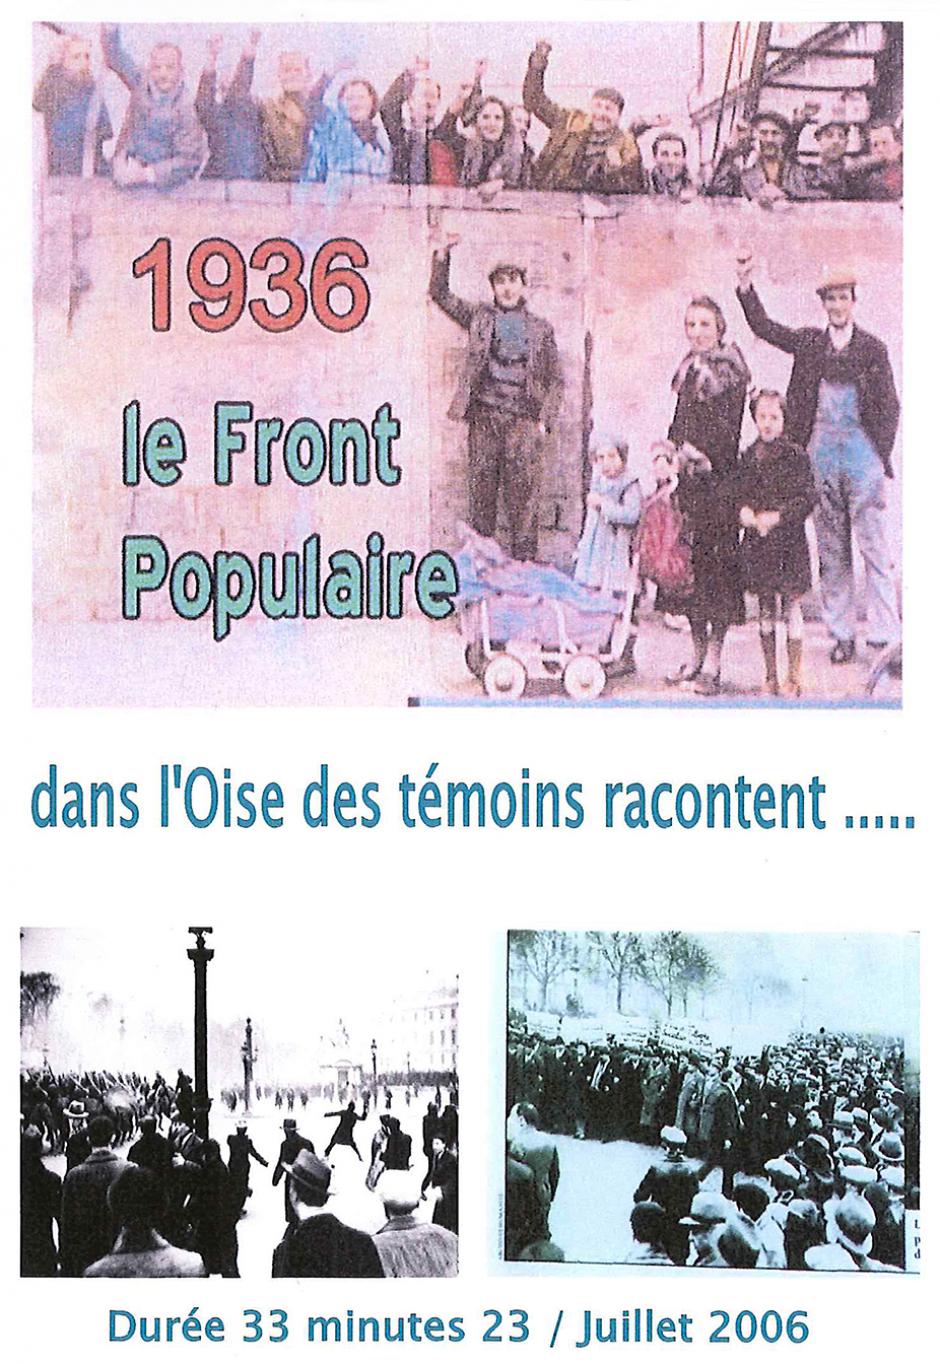 1936, le Front populaire : dans l'Oise, des témoins racontent…